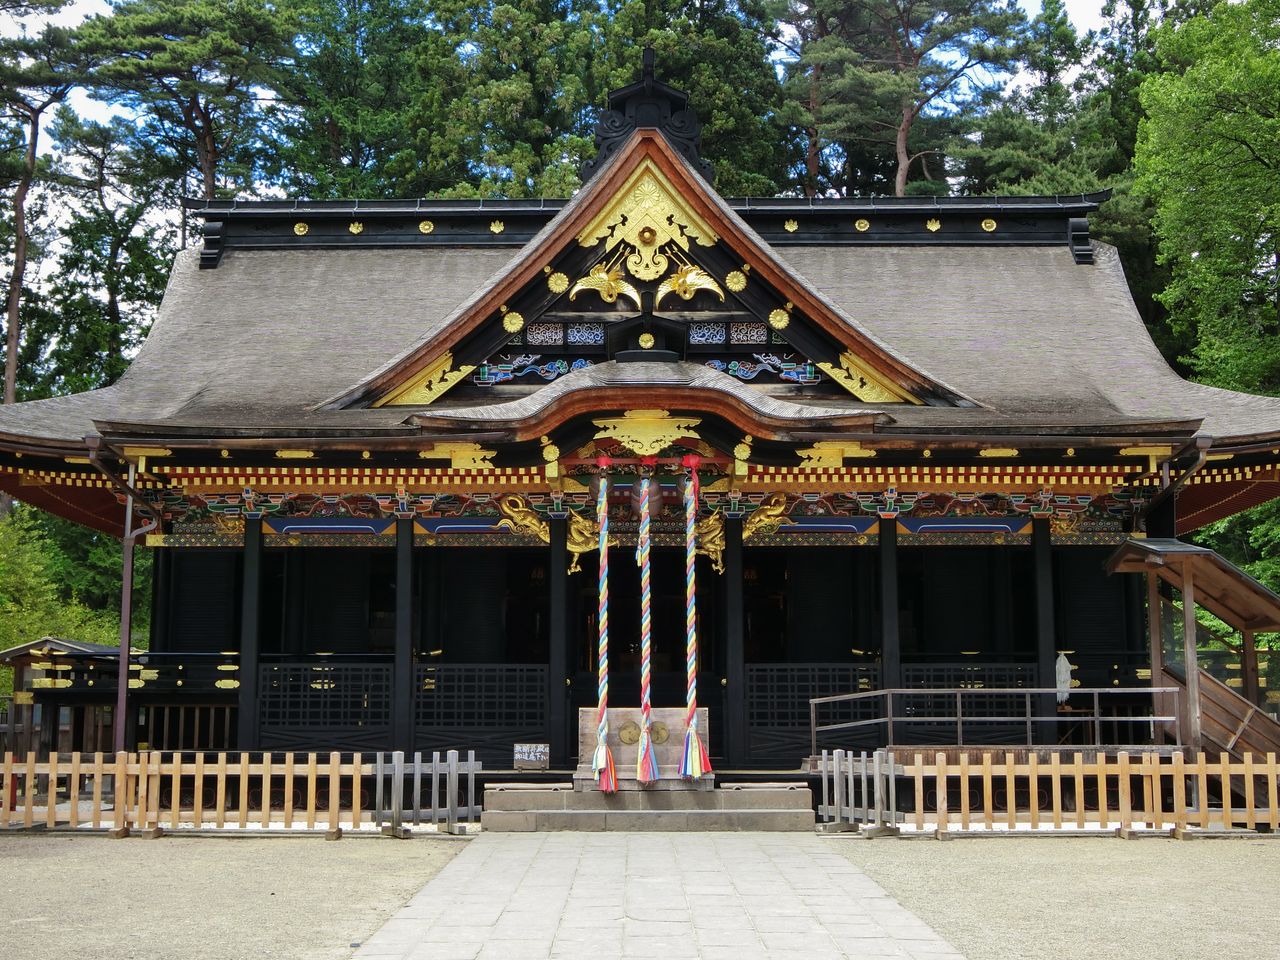 El edificio del santuario, tesoro nacional, situado en la parte trasera del recinto, es la estructura de estilo gongen más antigua de Japón. (Fotografía por cortesía de la Asociación Internacional de Turismo y Convenciones de Sendai)